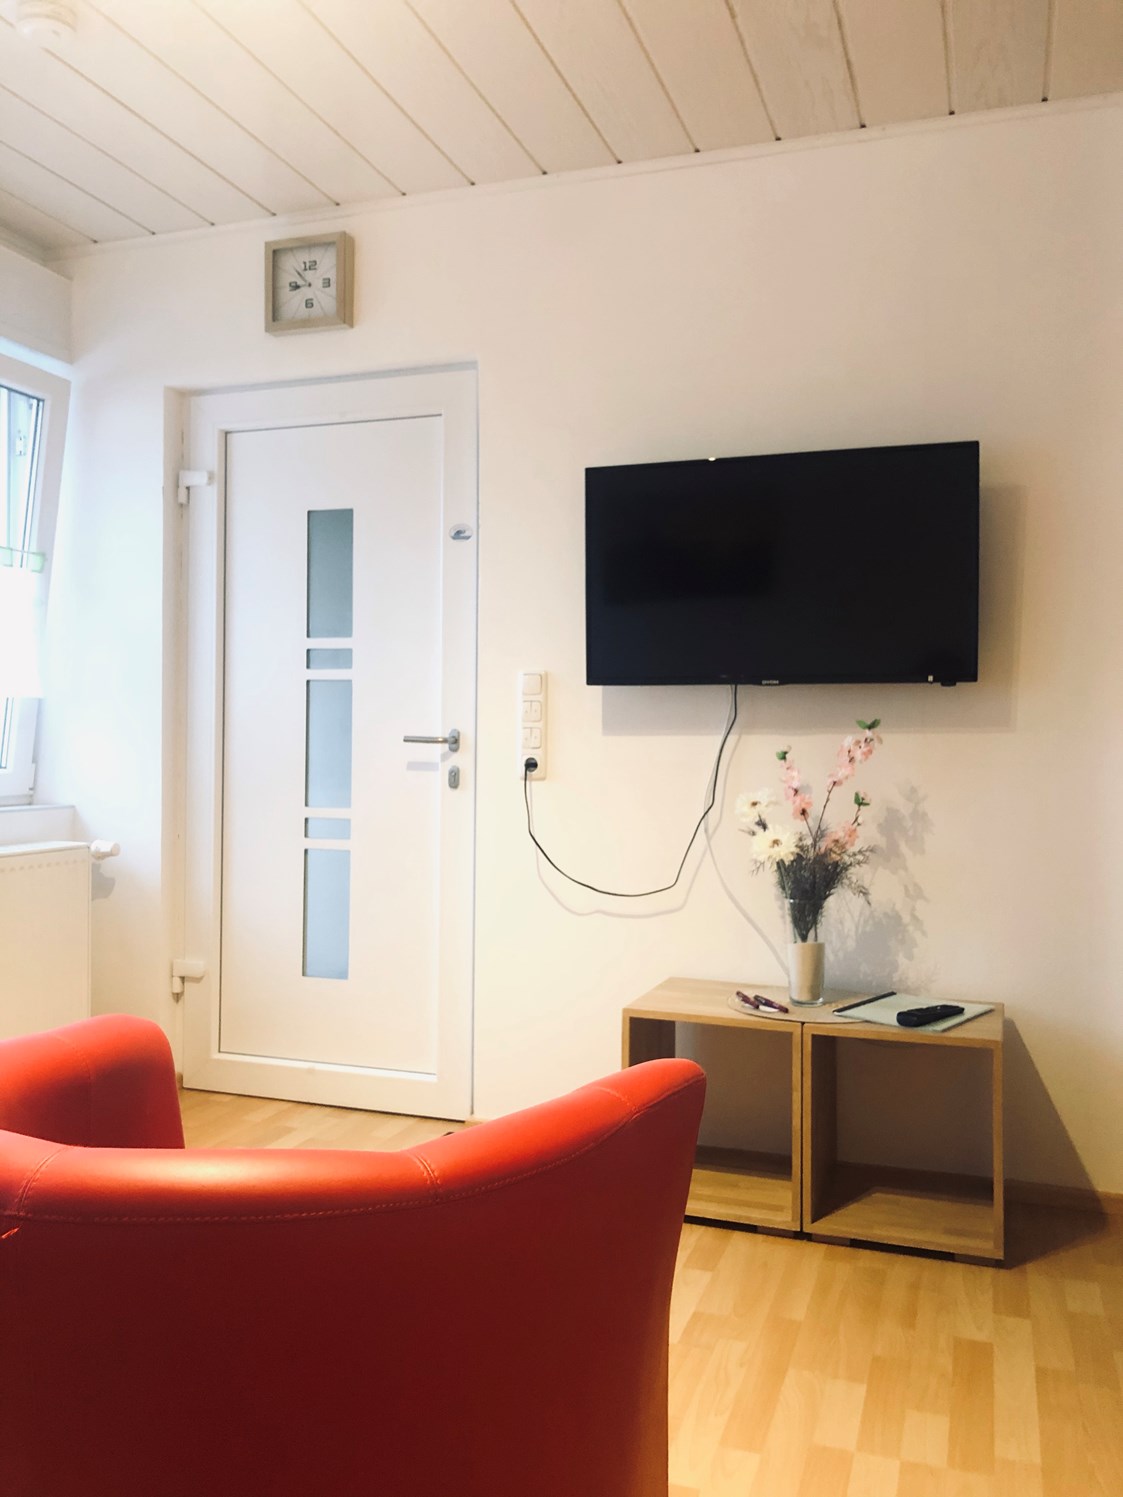 Monteurzimmer: Heller freundlicher TV - Wohnbereich mit Ein - Ausgang der Wohnung - Schlafen wie Zuhause Avianaart Monteur & Ferienwohnung 